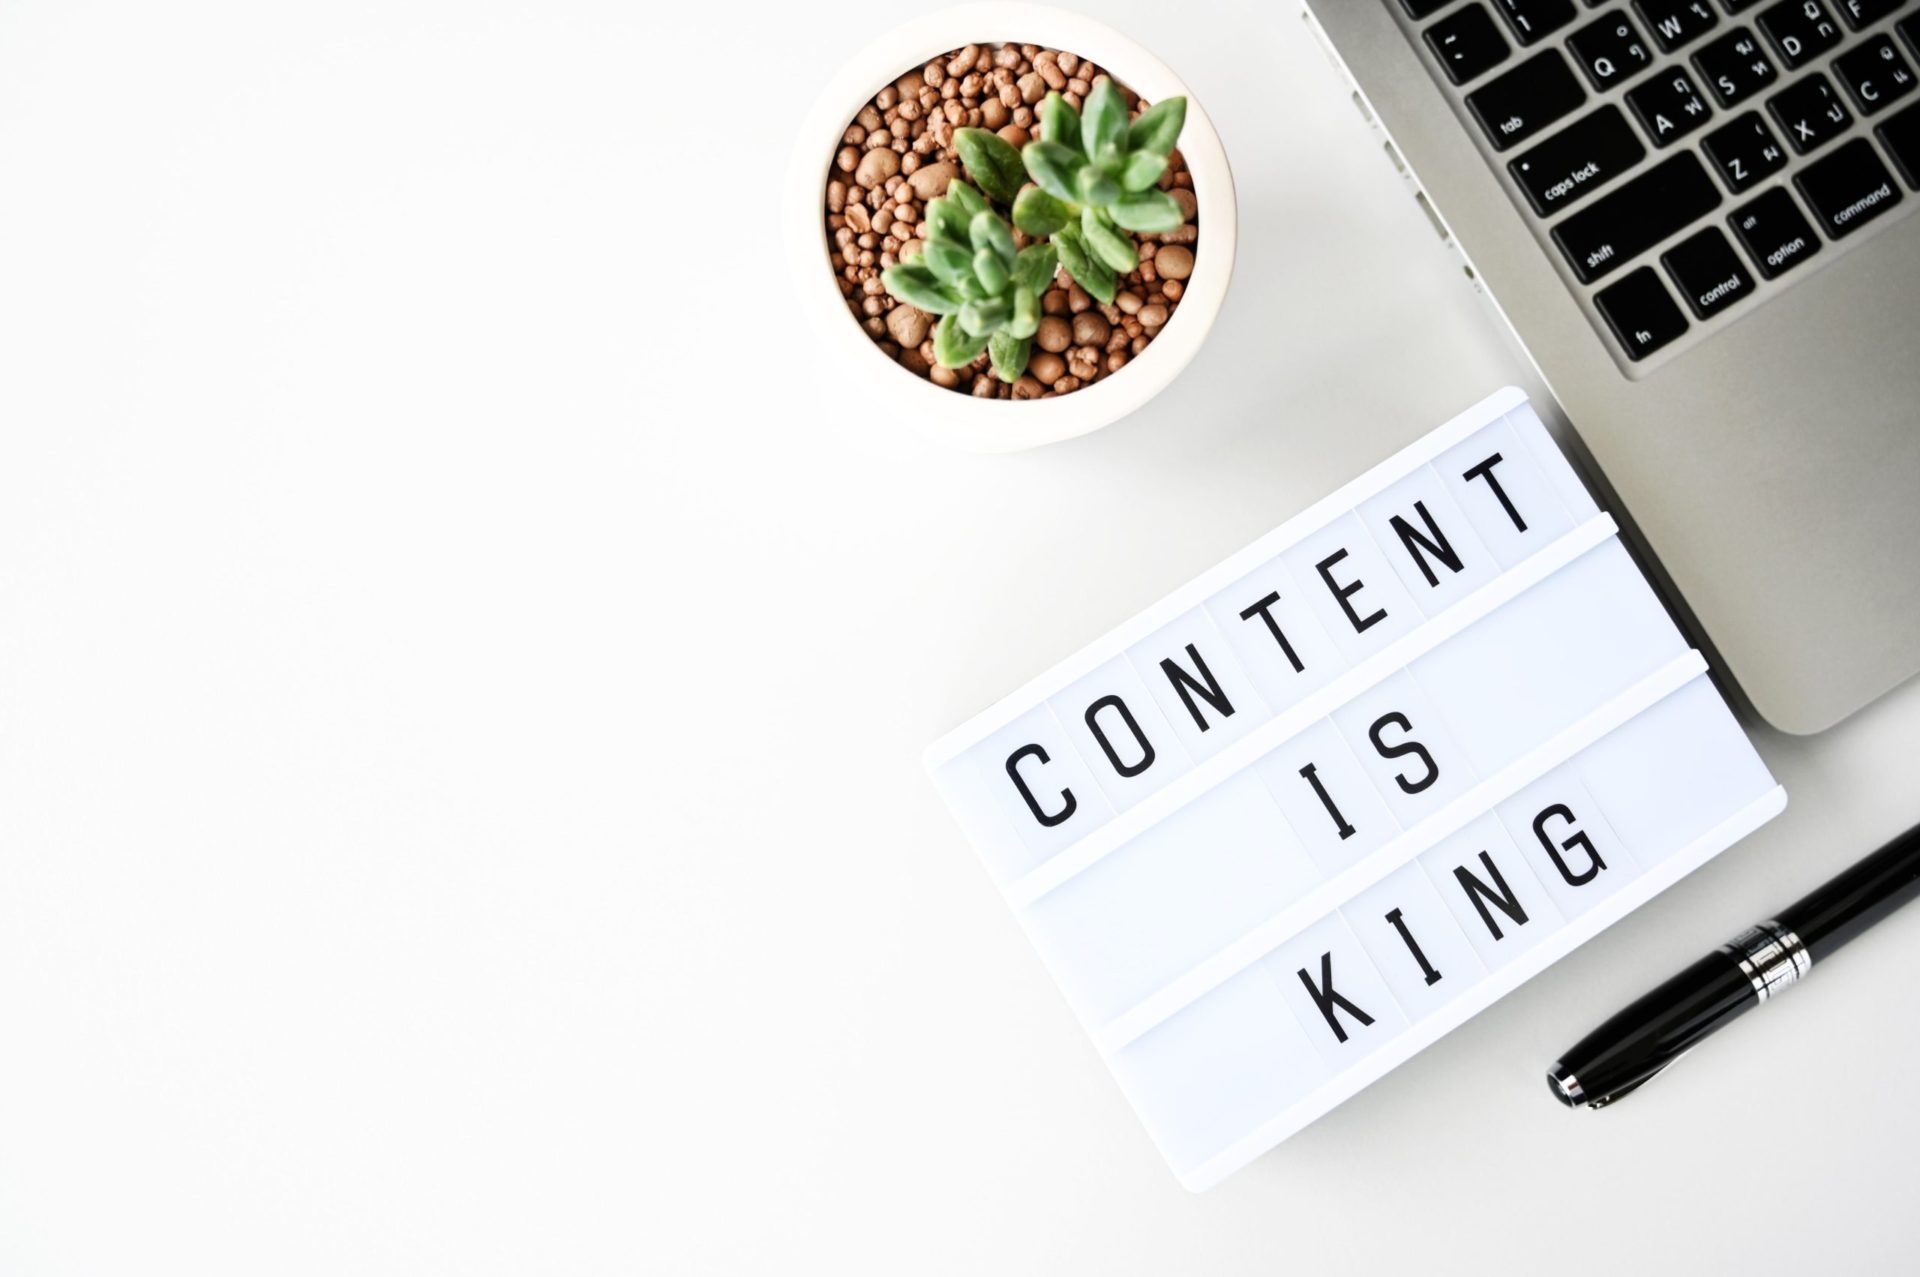 A tartalommarketing az online marketing eszközök egyik legfontosabb eleme, ahogy a képen látható "content is king" kifejezés is jelképezi.